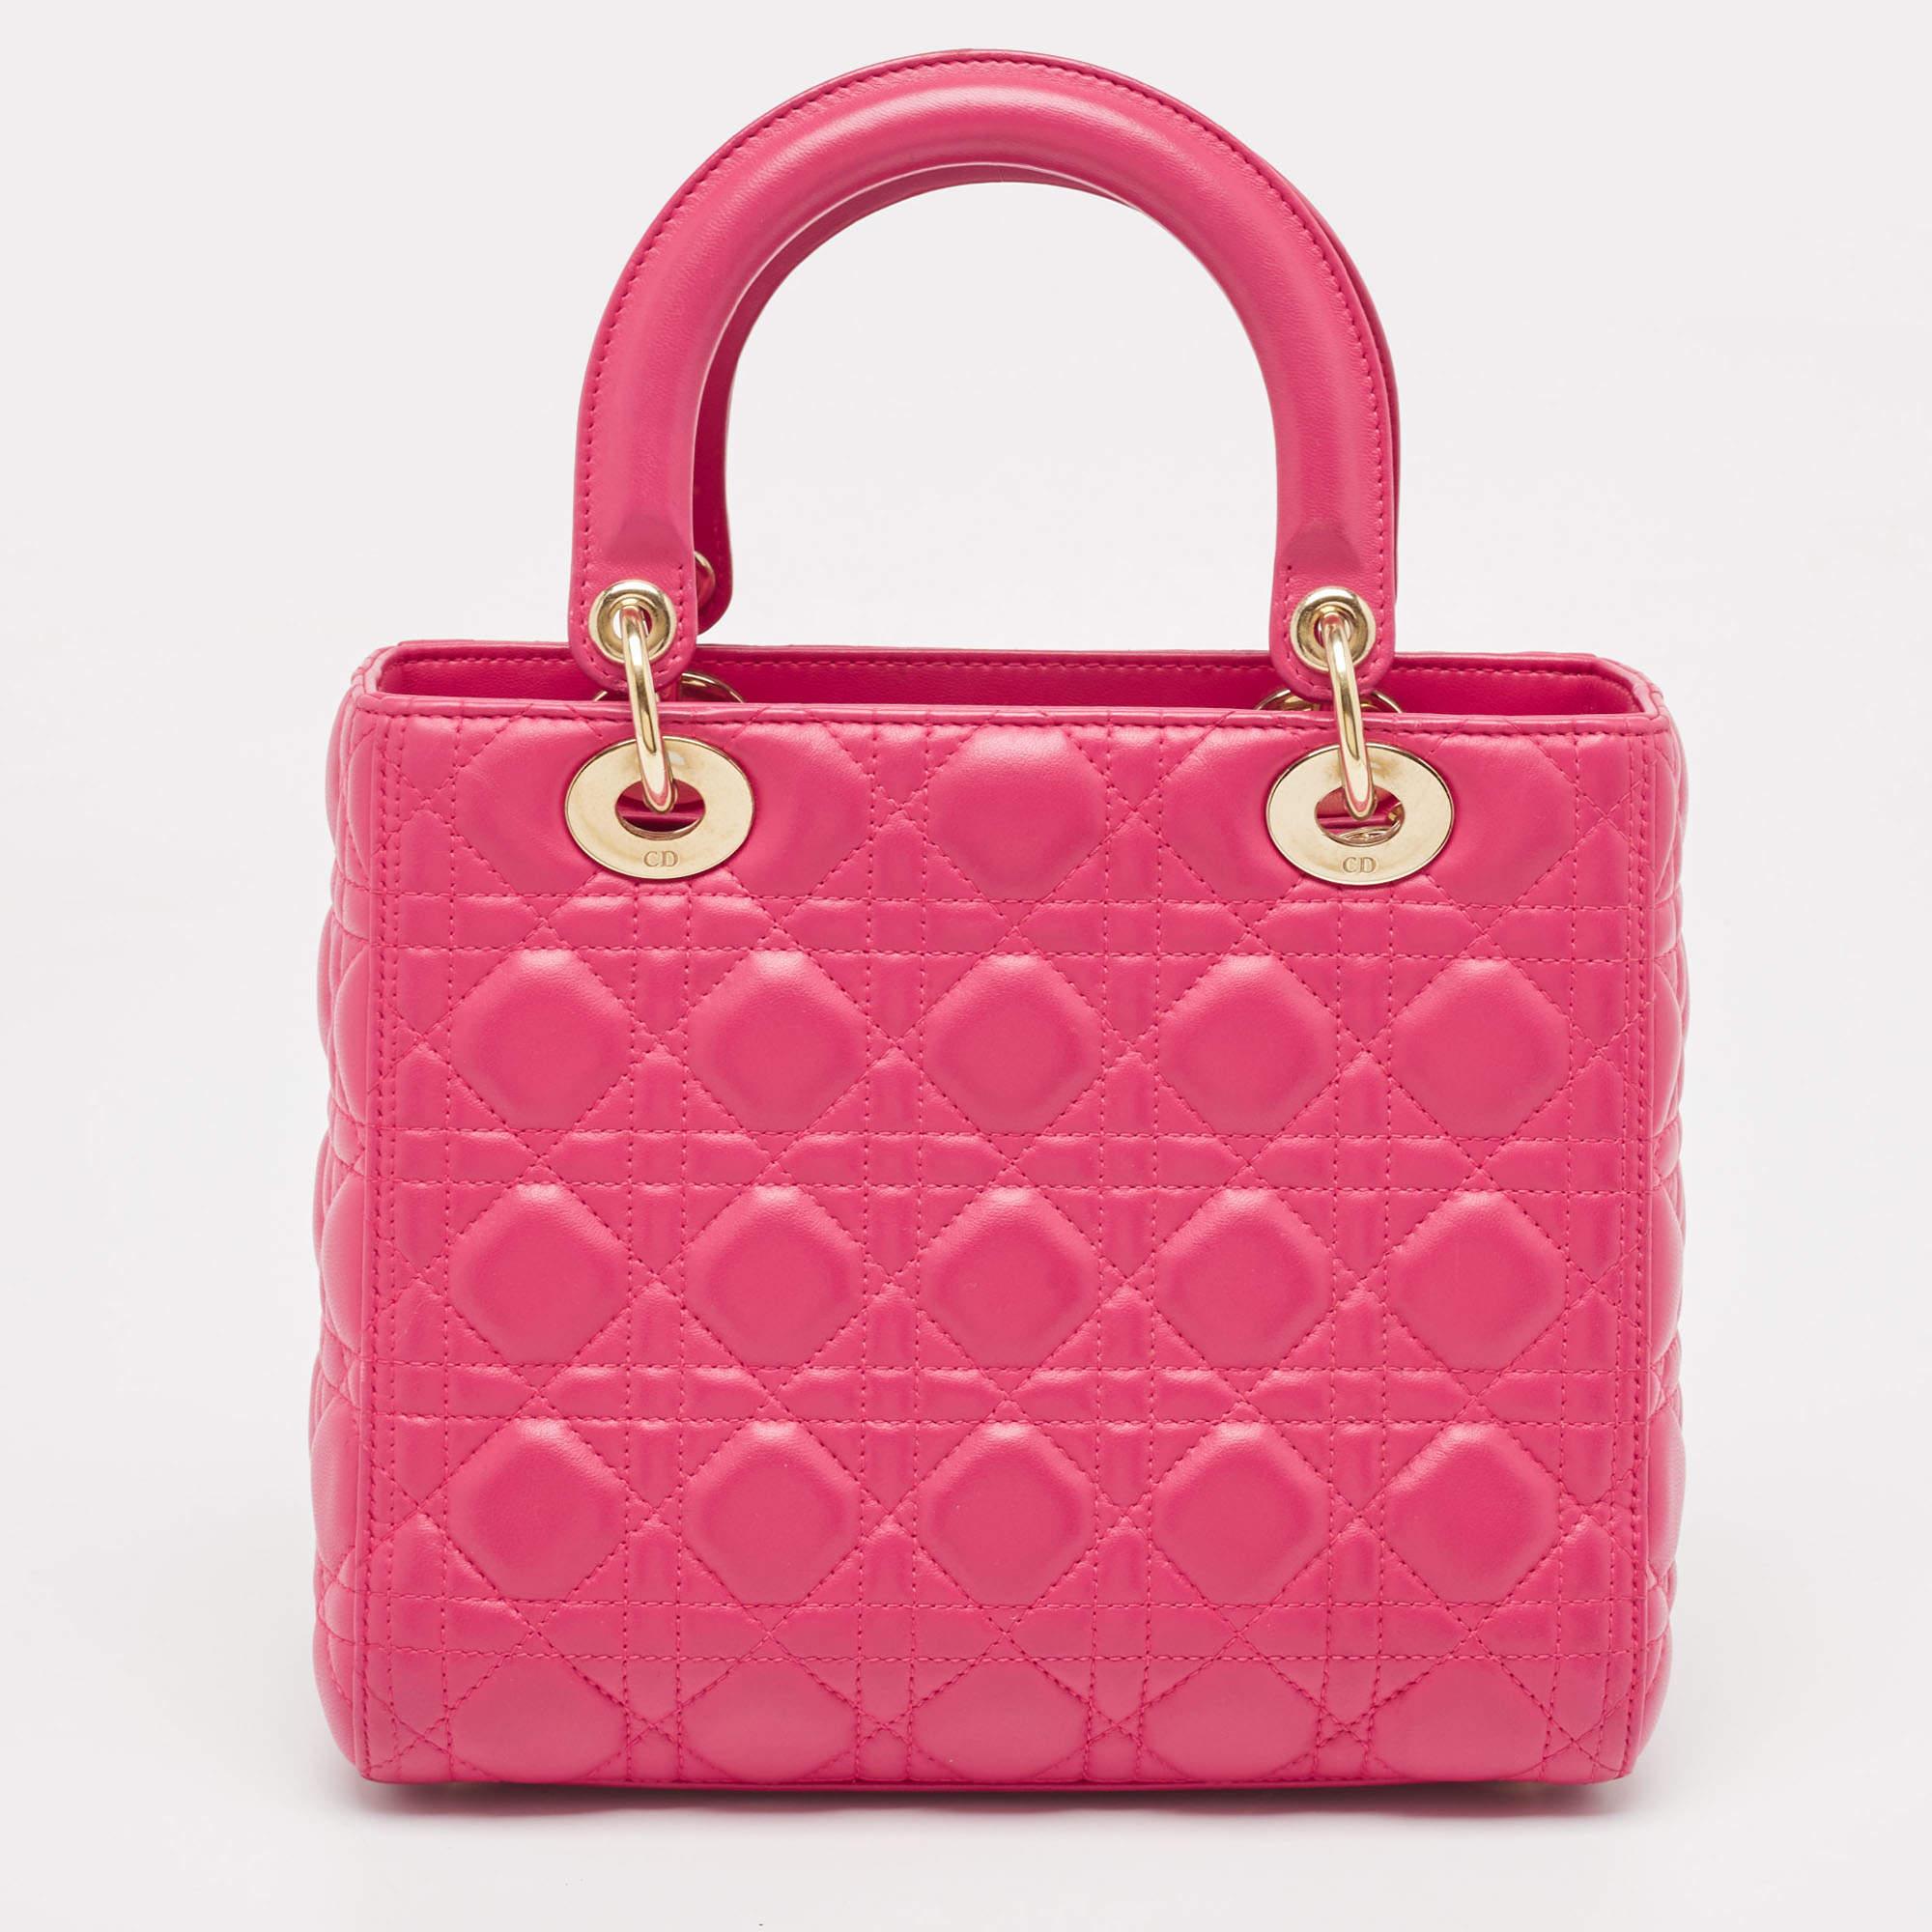 Assurez-vous que vos essentiels de la journée sont en ordre et que votre tenue est complète avec ce sac Lady Dior rose. Fabriqué à partir des meilleurs matériaux, ce sac porte la signature de la Maison Maison Maison en termes d'artisanat d'art et